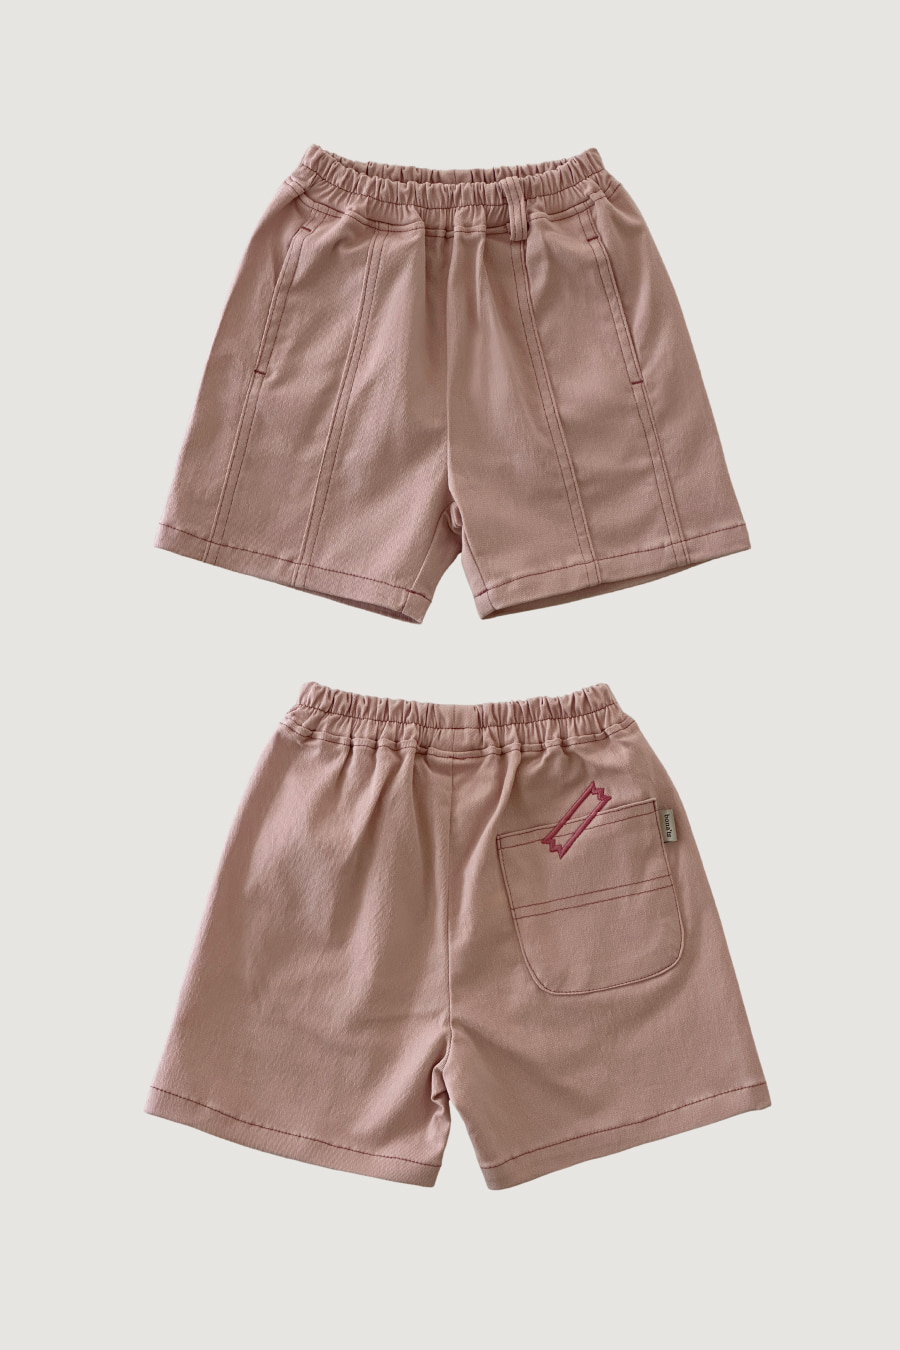 Stitch shorts (Pink)